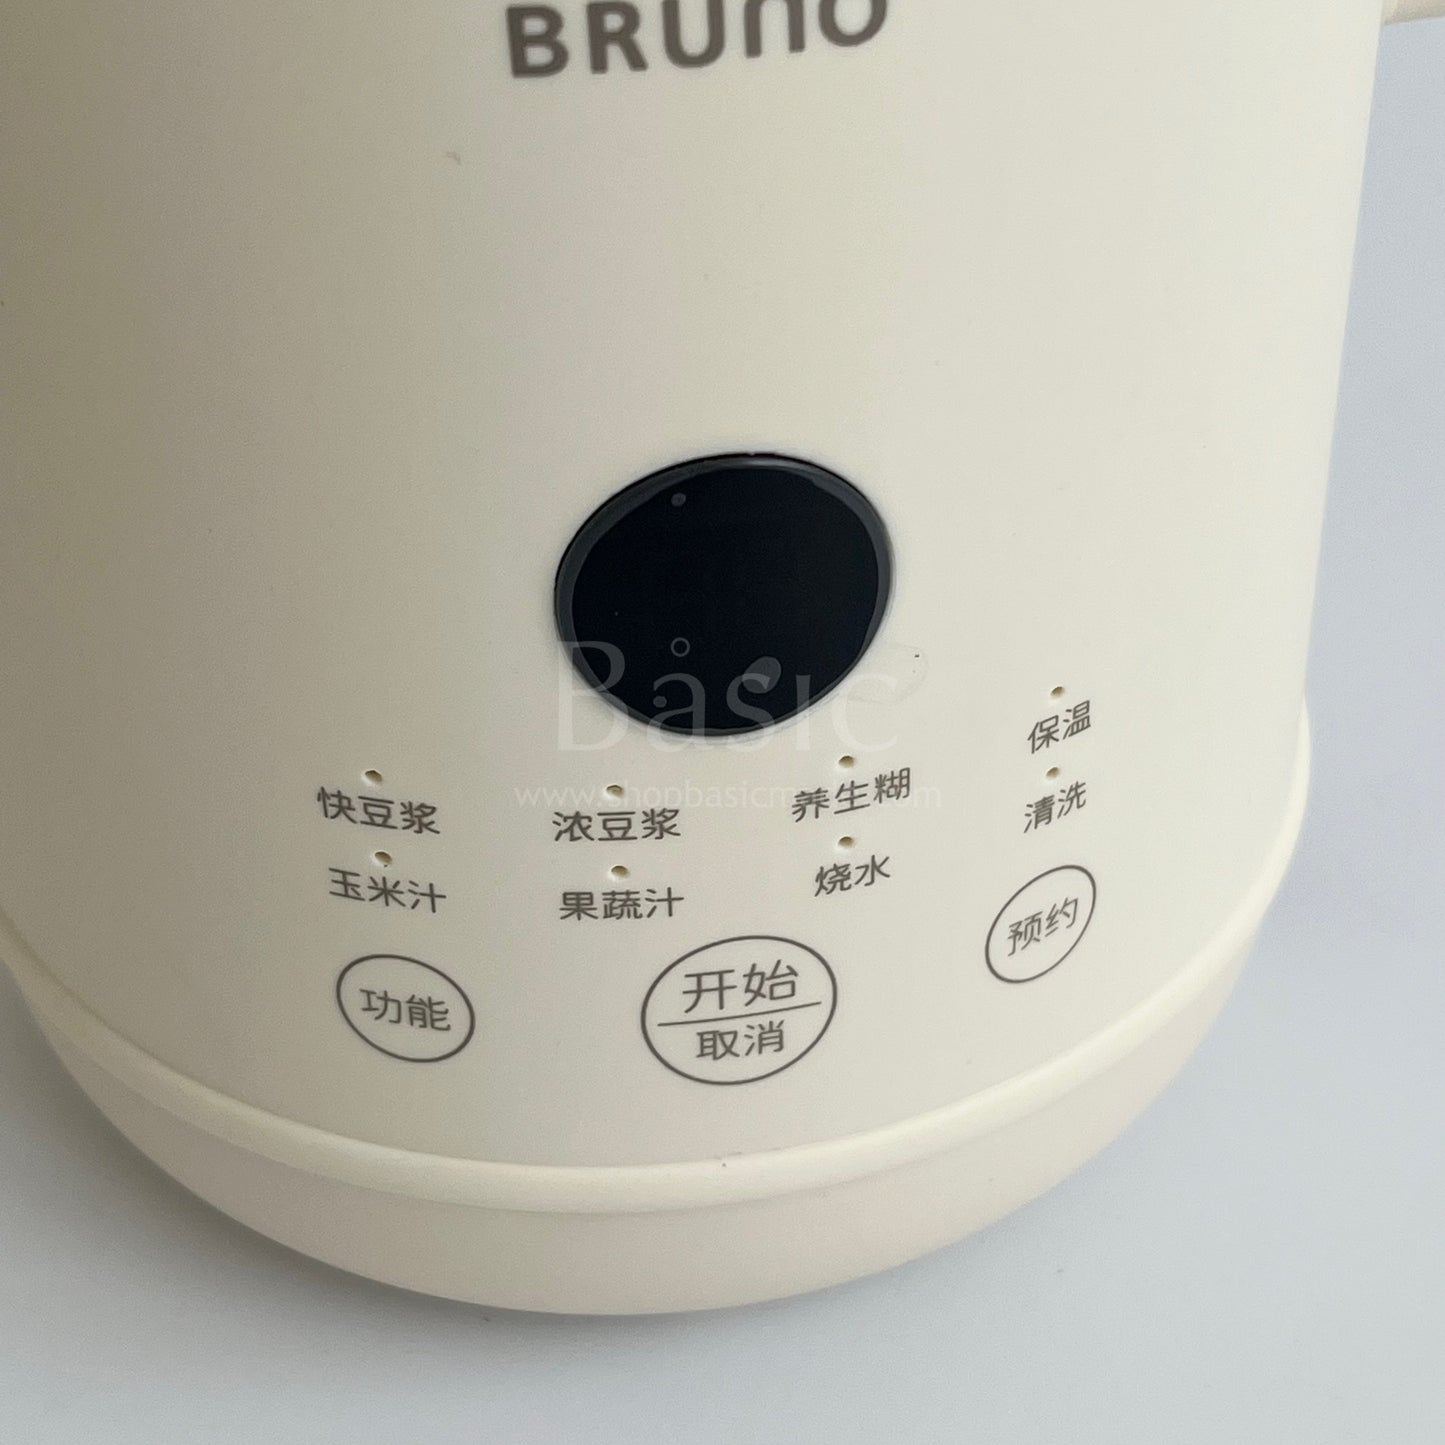 Bruno Soya Milk Maker 600ml